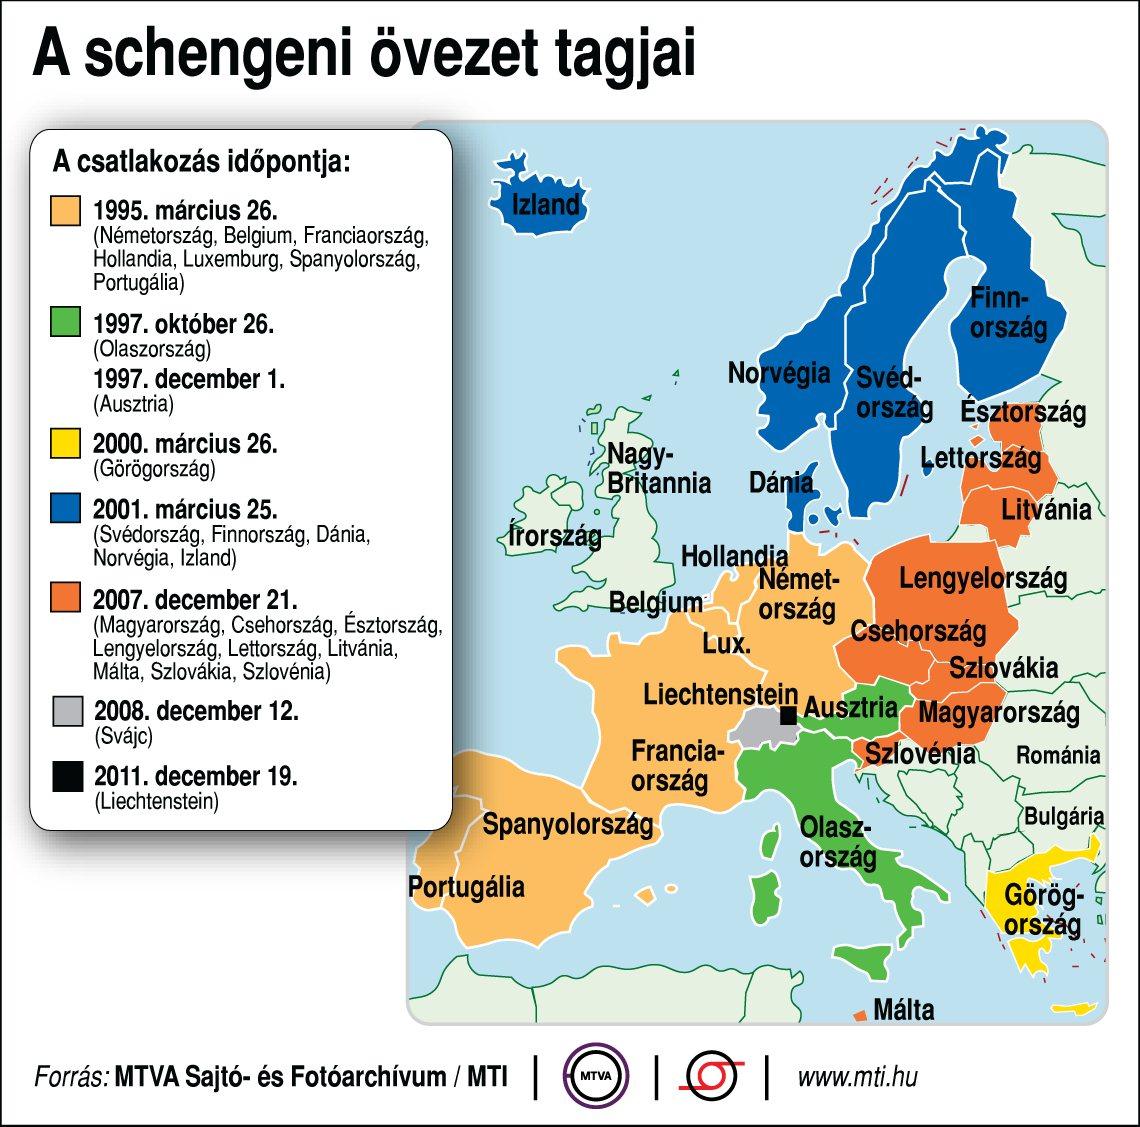 Így nézett ki eddig a schengeni övezet